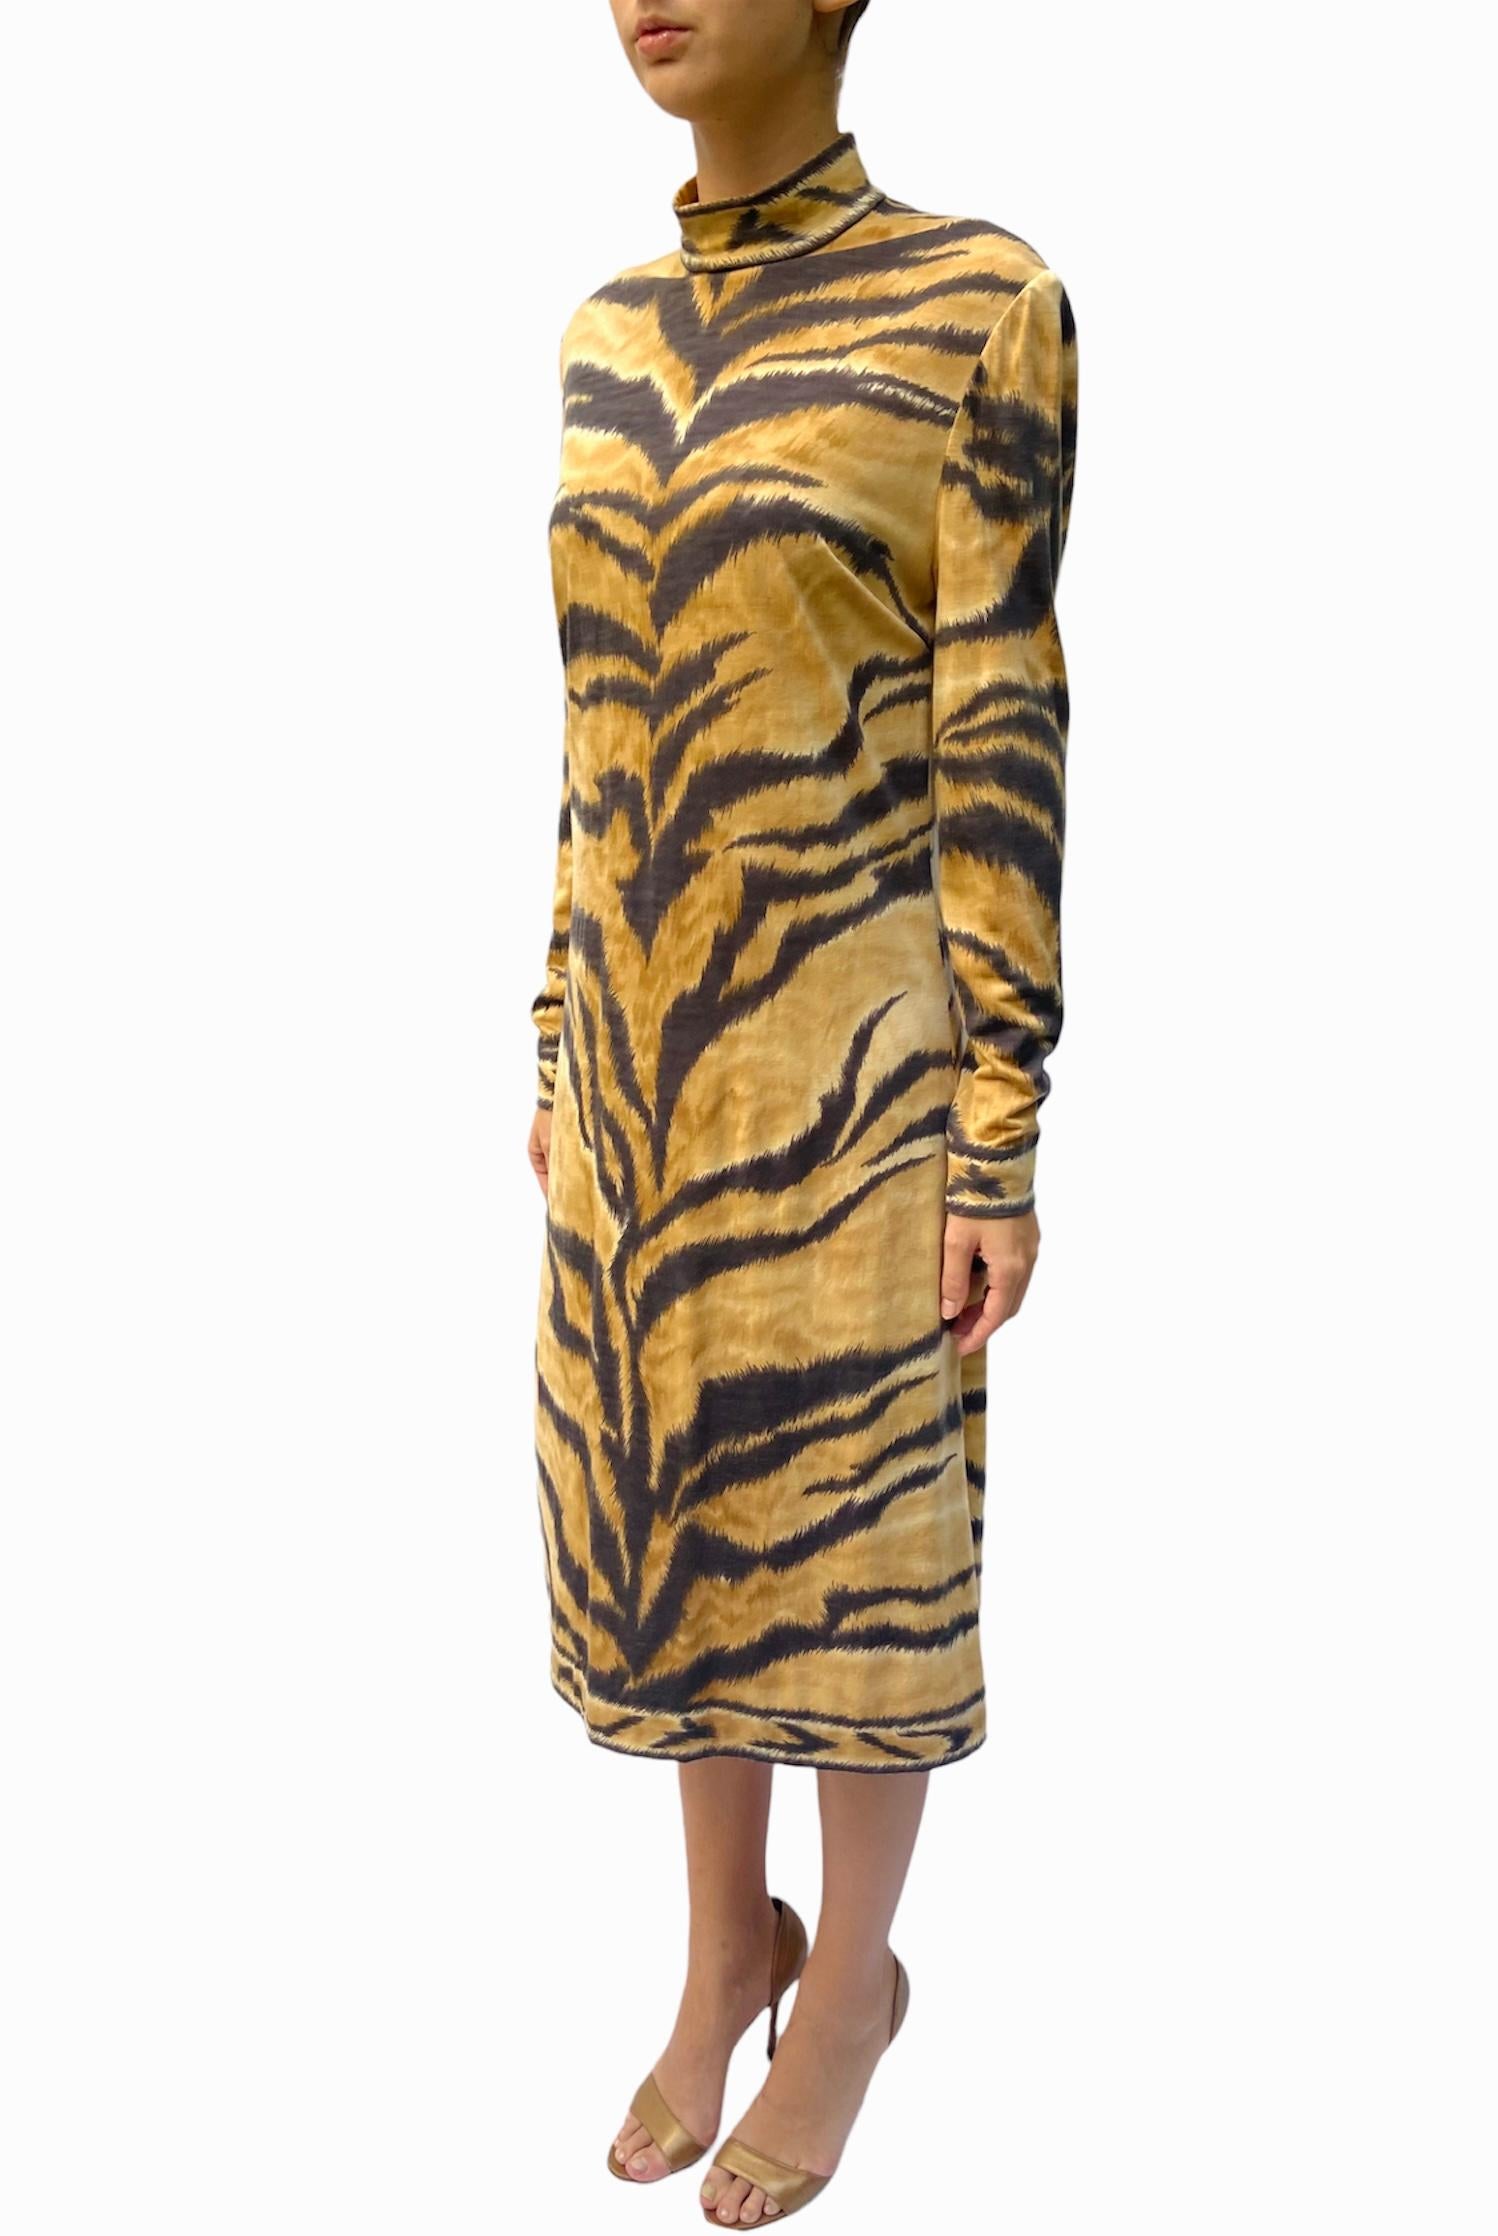 Women's 1980S LEONARD Wool Jersey Tiger Striped Long Sleeve Dress